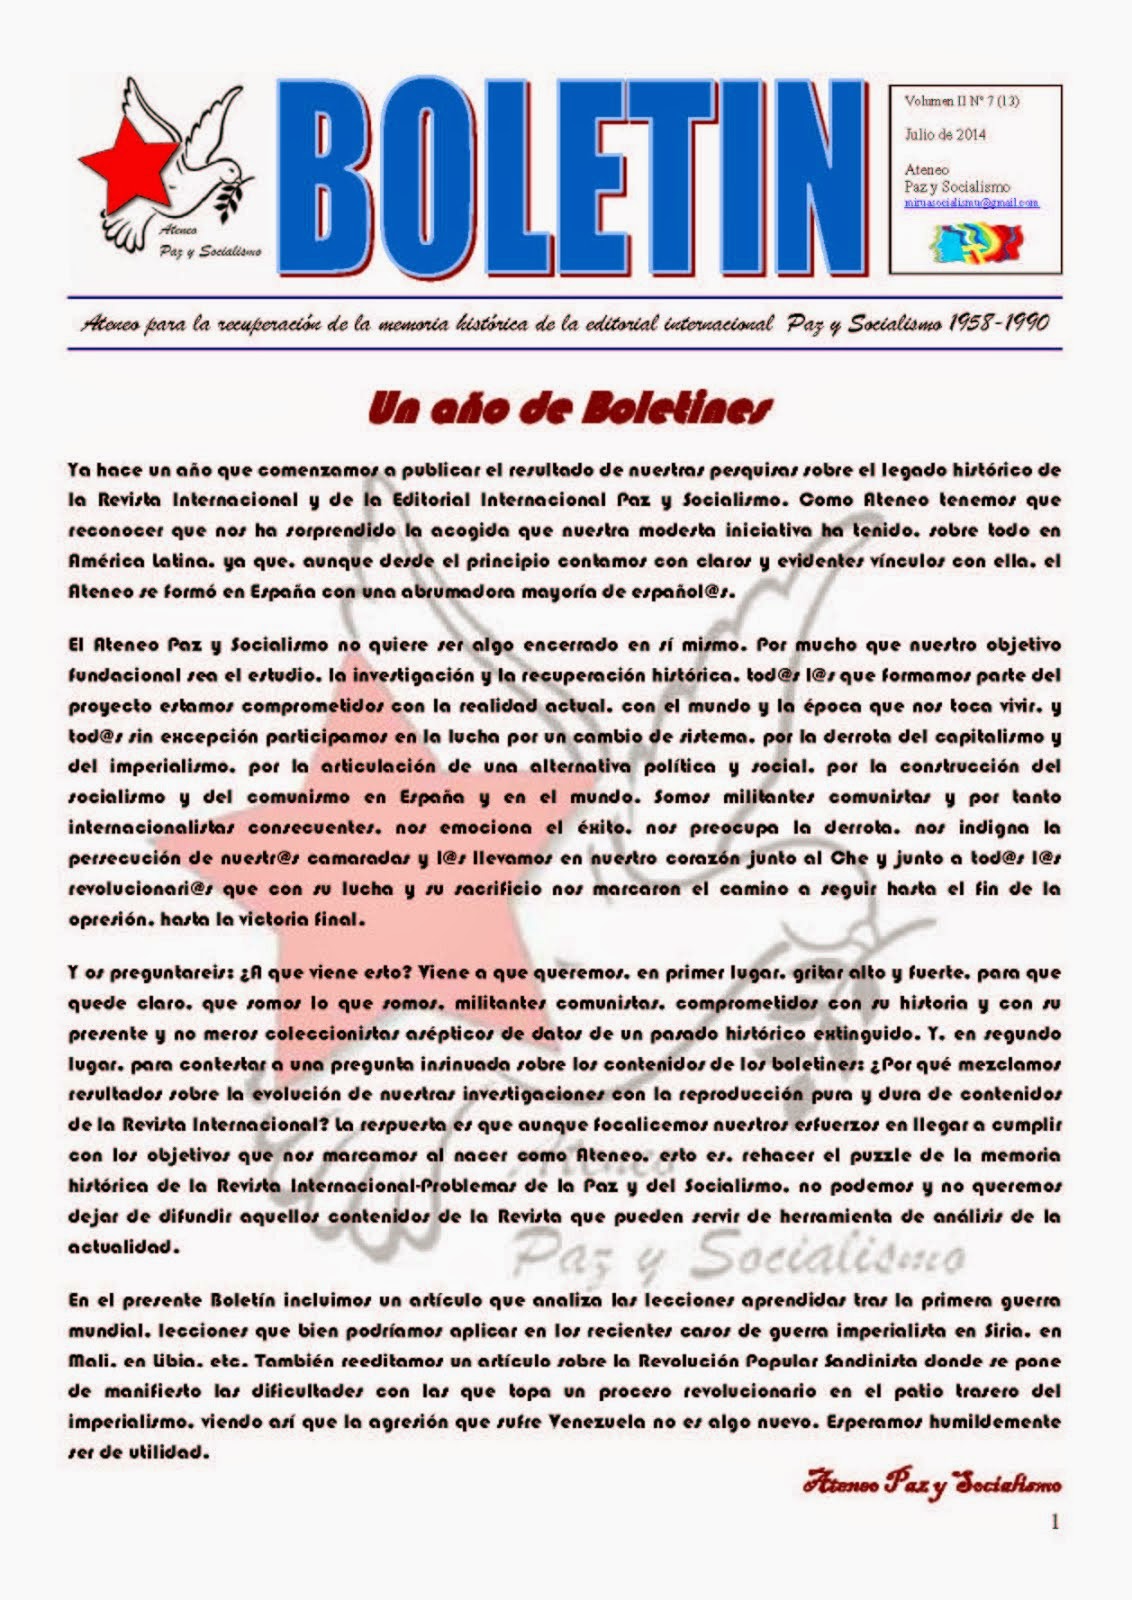 BOLETIN Nº13 DEL ATENEO PAZ Y SOCIALISMO - JULIO DE 2014